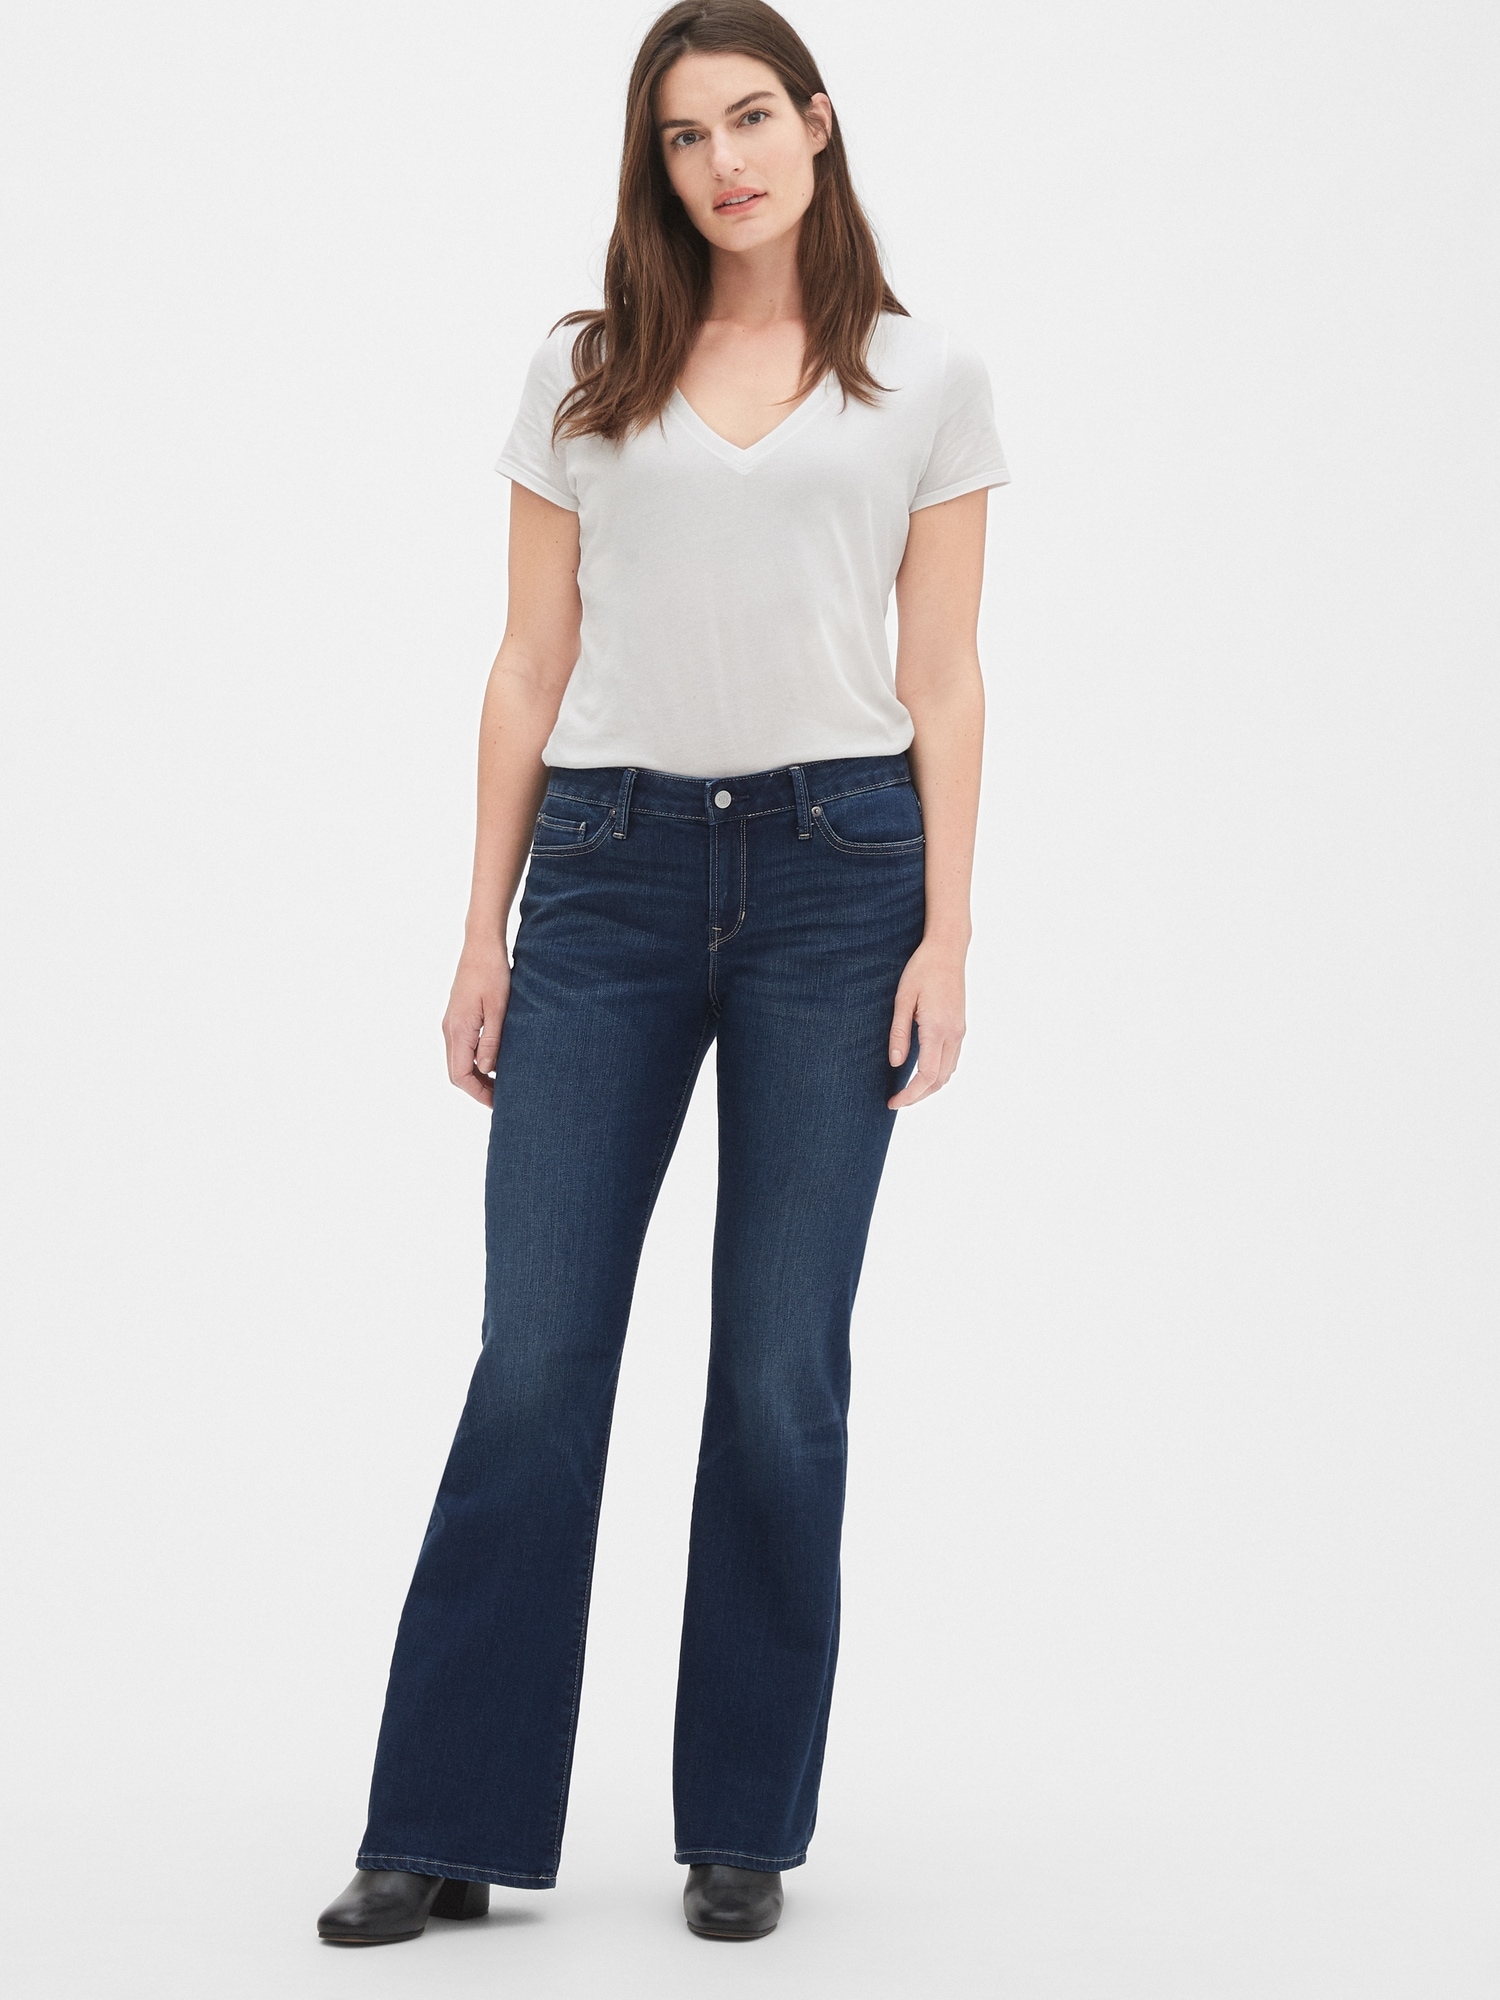 Mid Rise Long & Lean Jeans | Gap